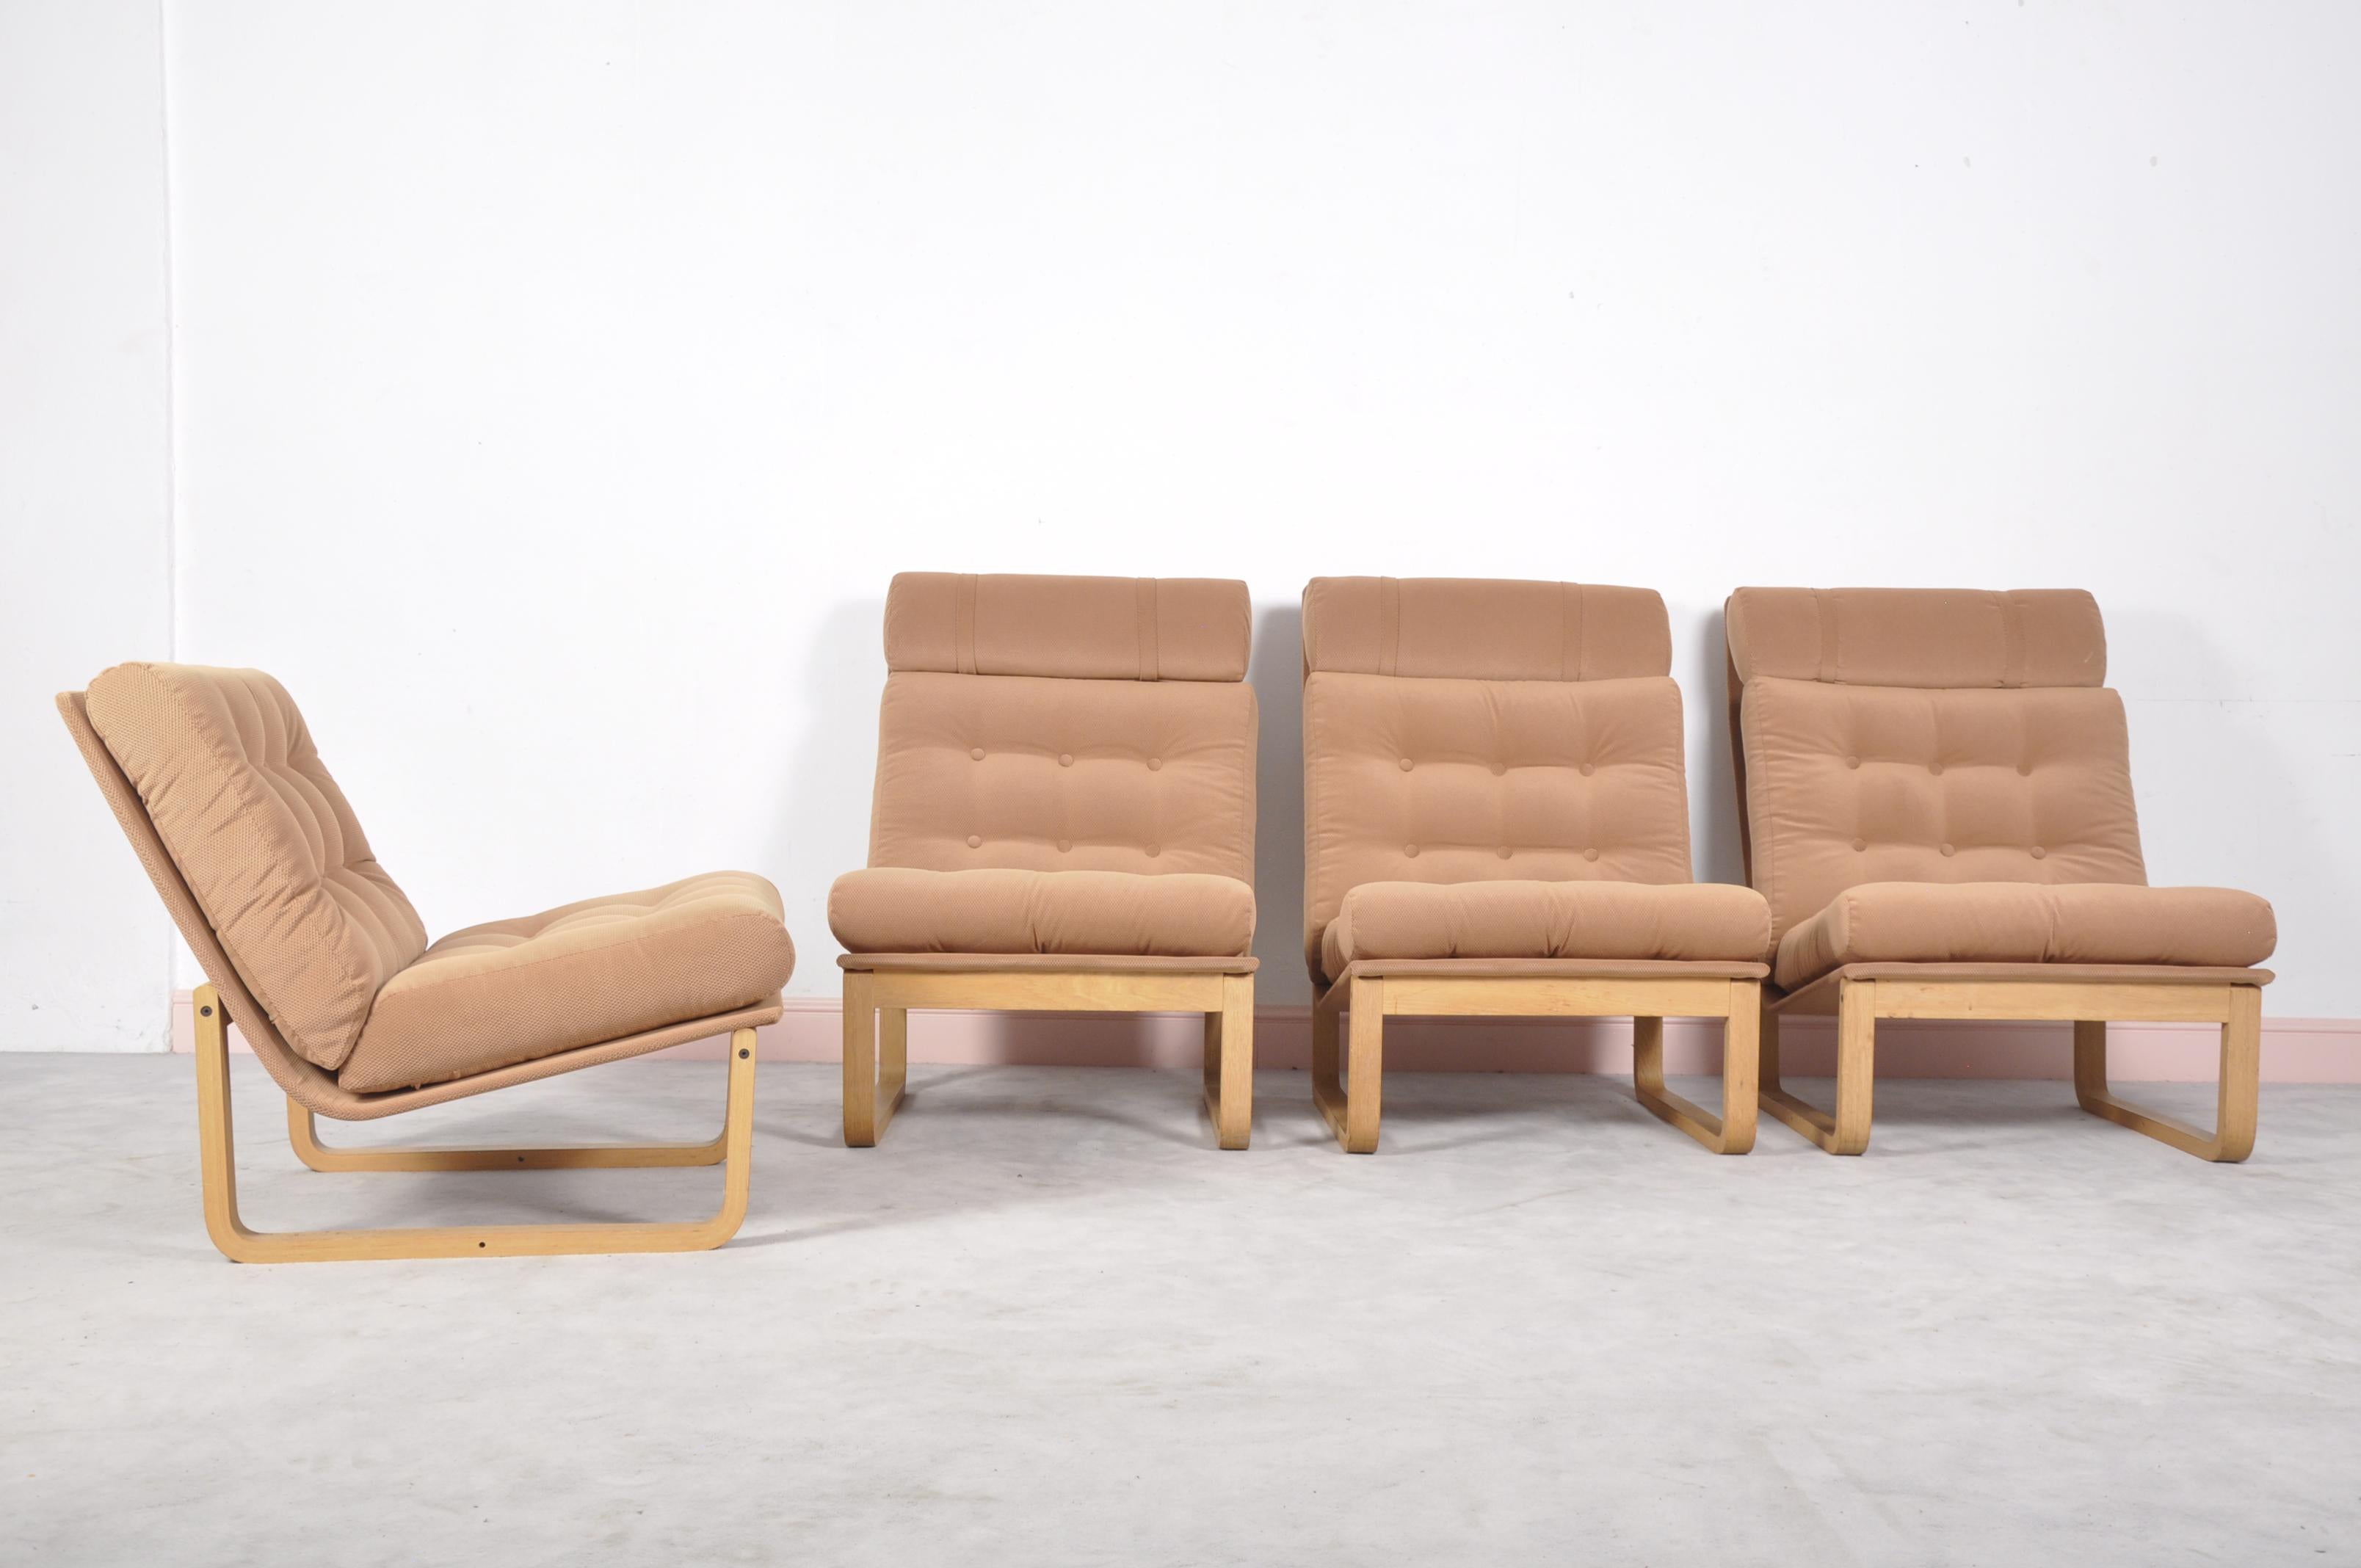 Sectional sofa by Rud Thygesen & Johnny Sorensen for Magnus Olsen, Durup, 1960s.